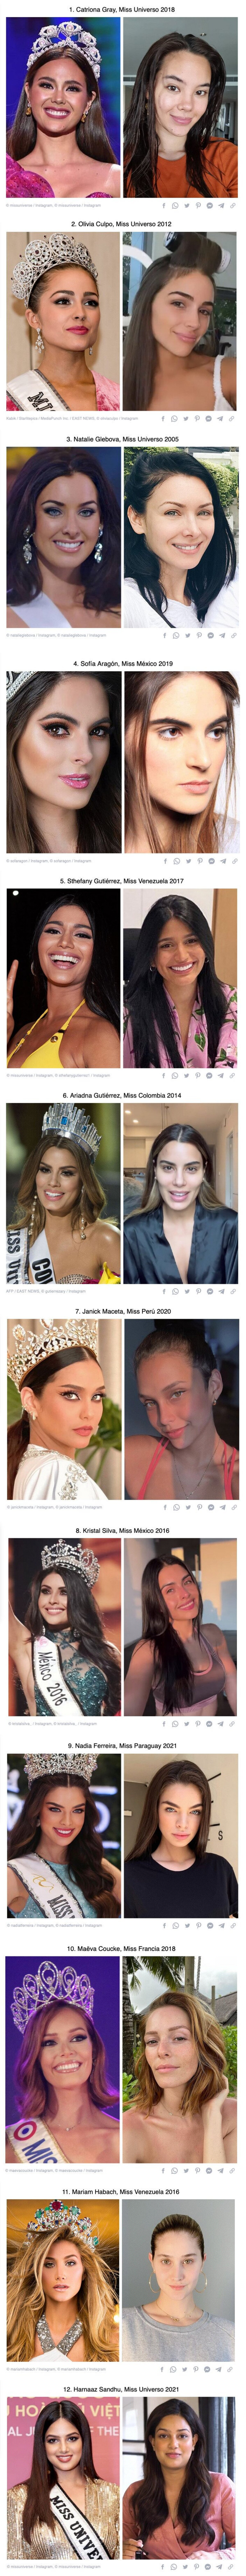 GALERÍA: 12 Candidatas de Miss Universo enseñaron su rostro sin maquillaje y merecen la corona a la belleza natural